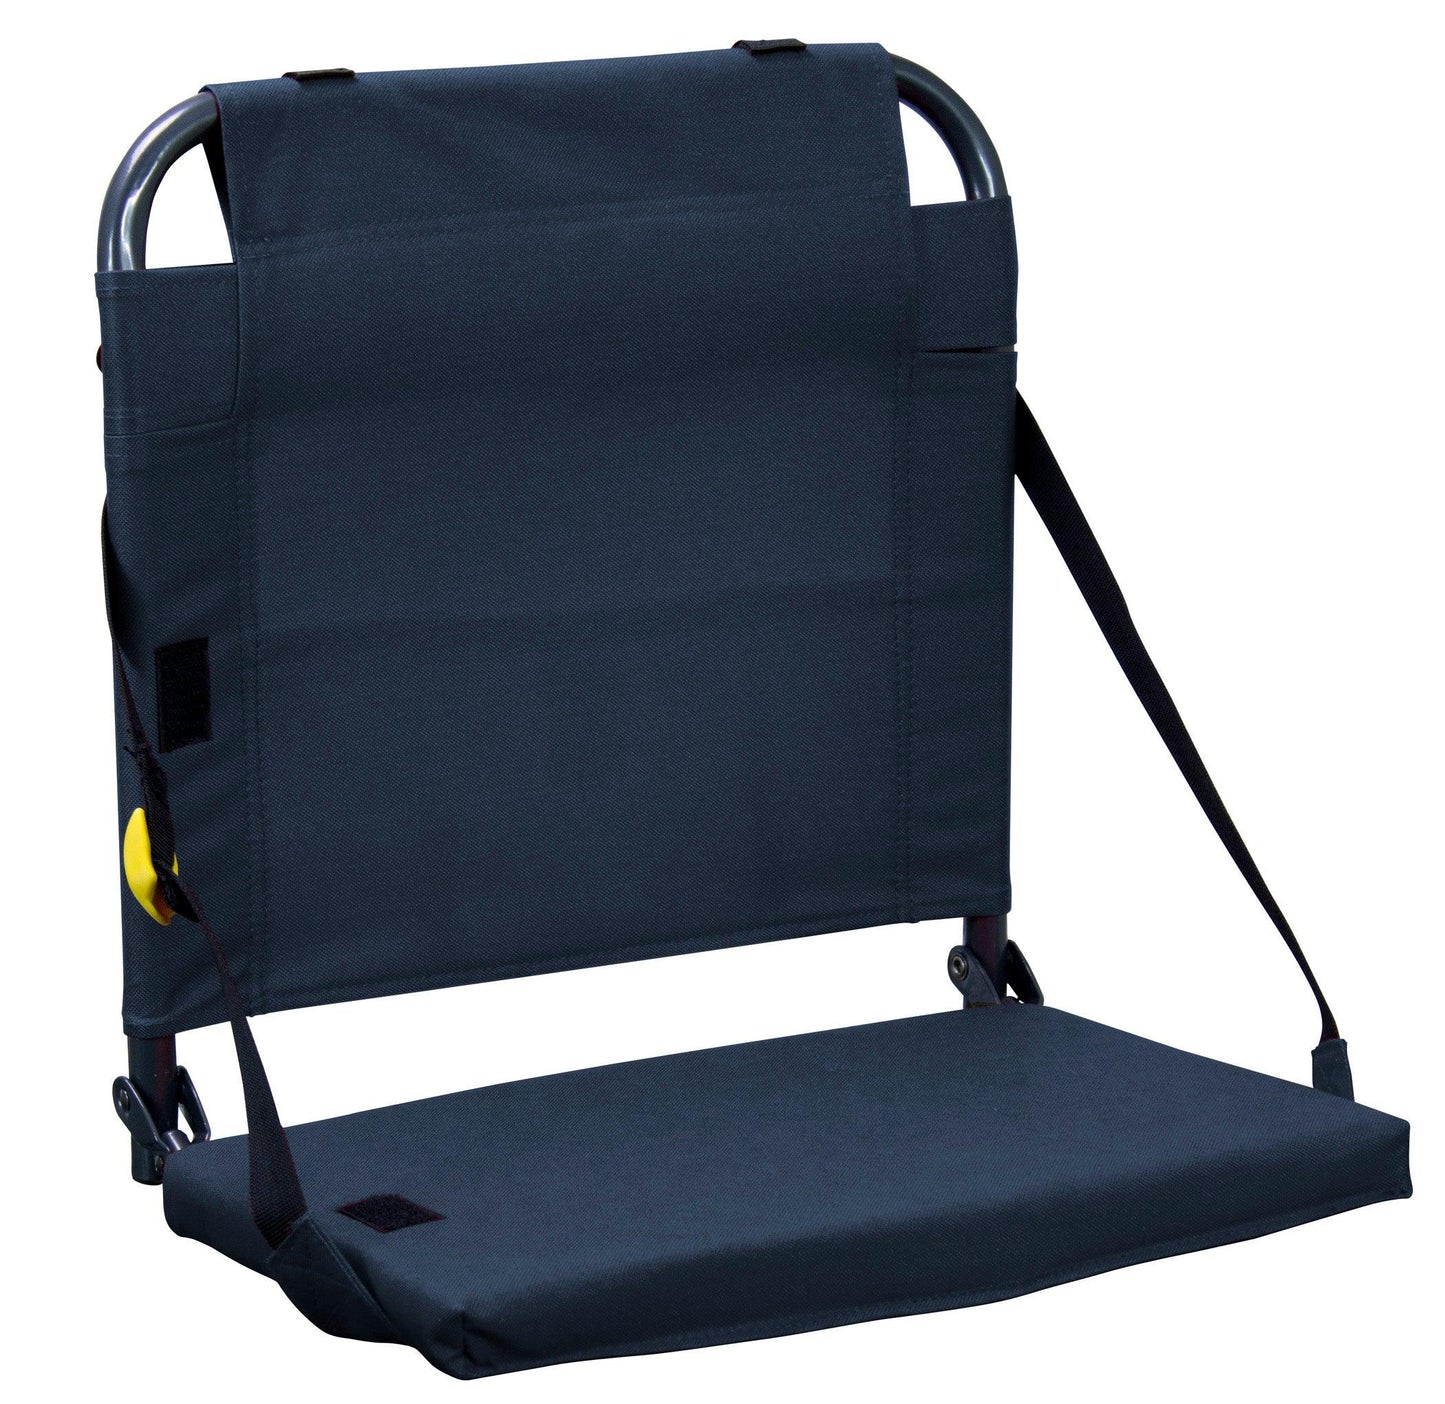 GCI Outdoor BleacherBack Lumbar Stadium Chair with Padded Backrest